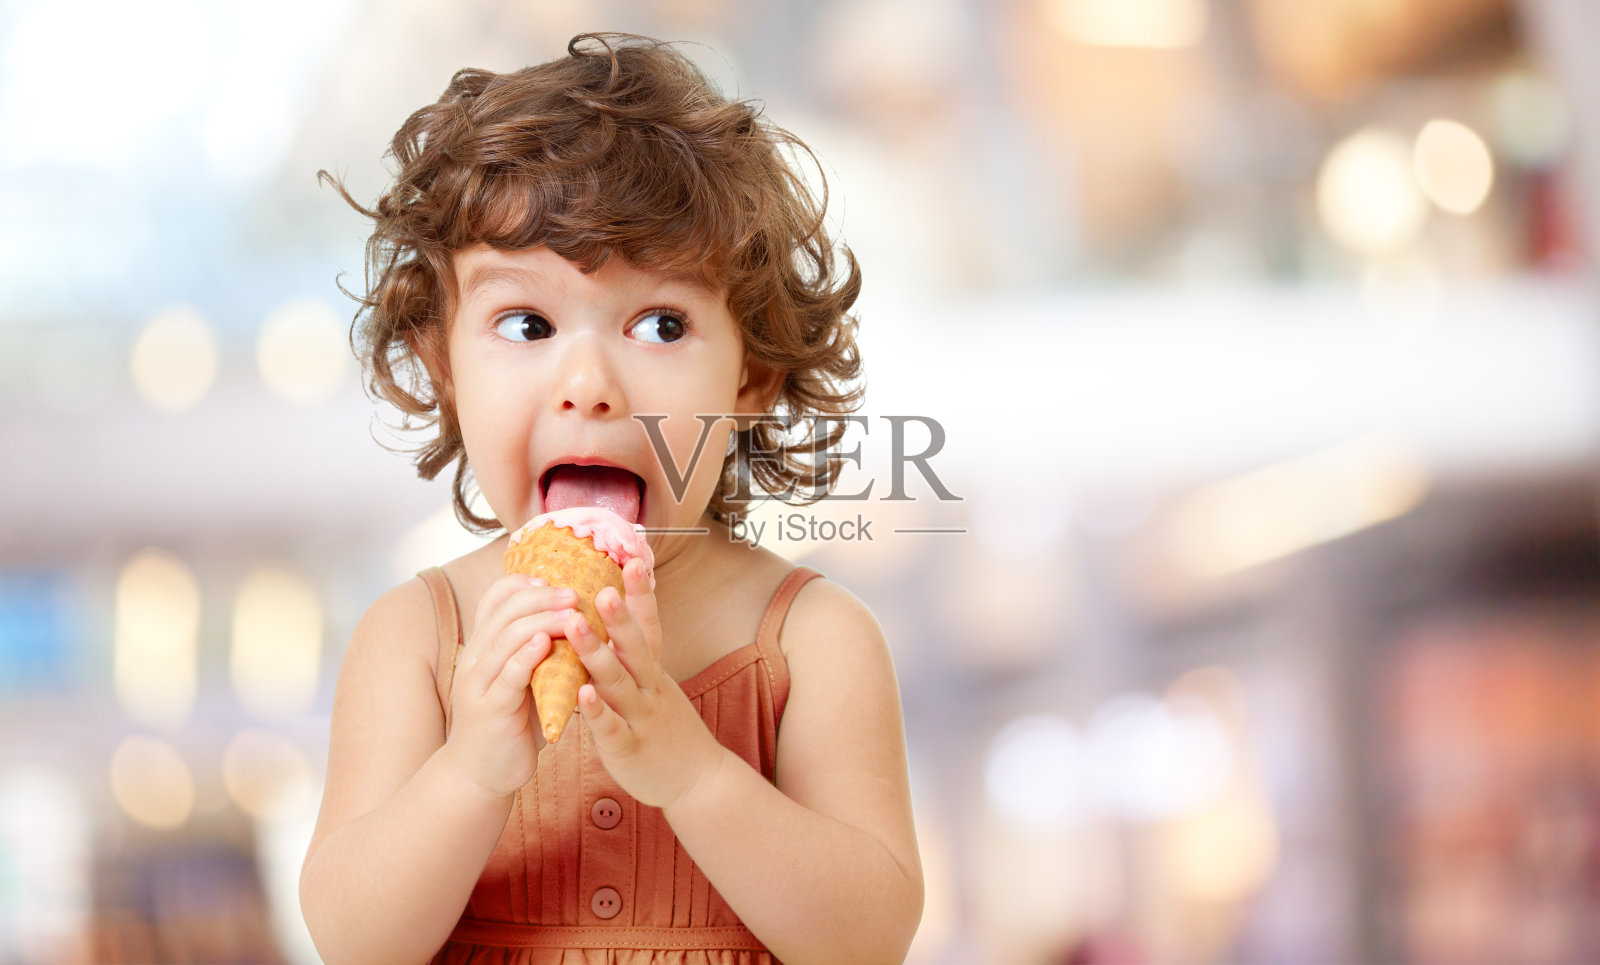 可愛的小女孩在戶外咖啡館吃冰淇淋 照片背景圖桌布圖片免費下載 - Pngtree